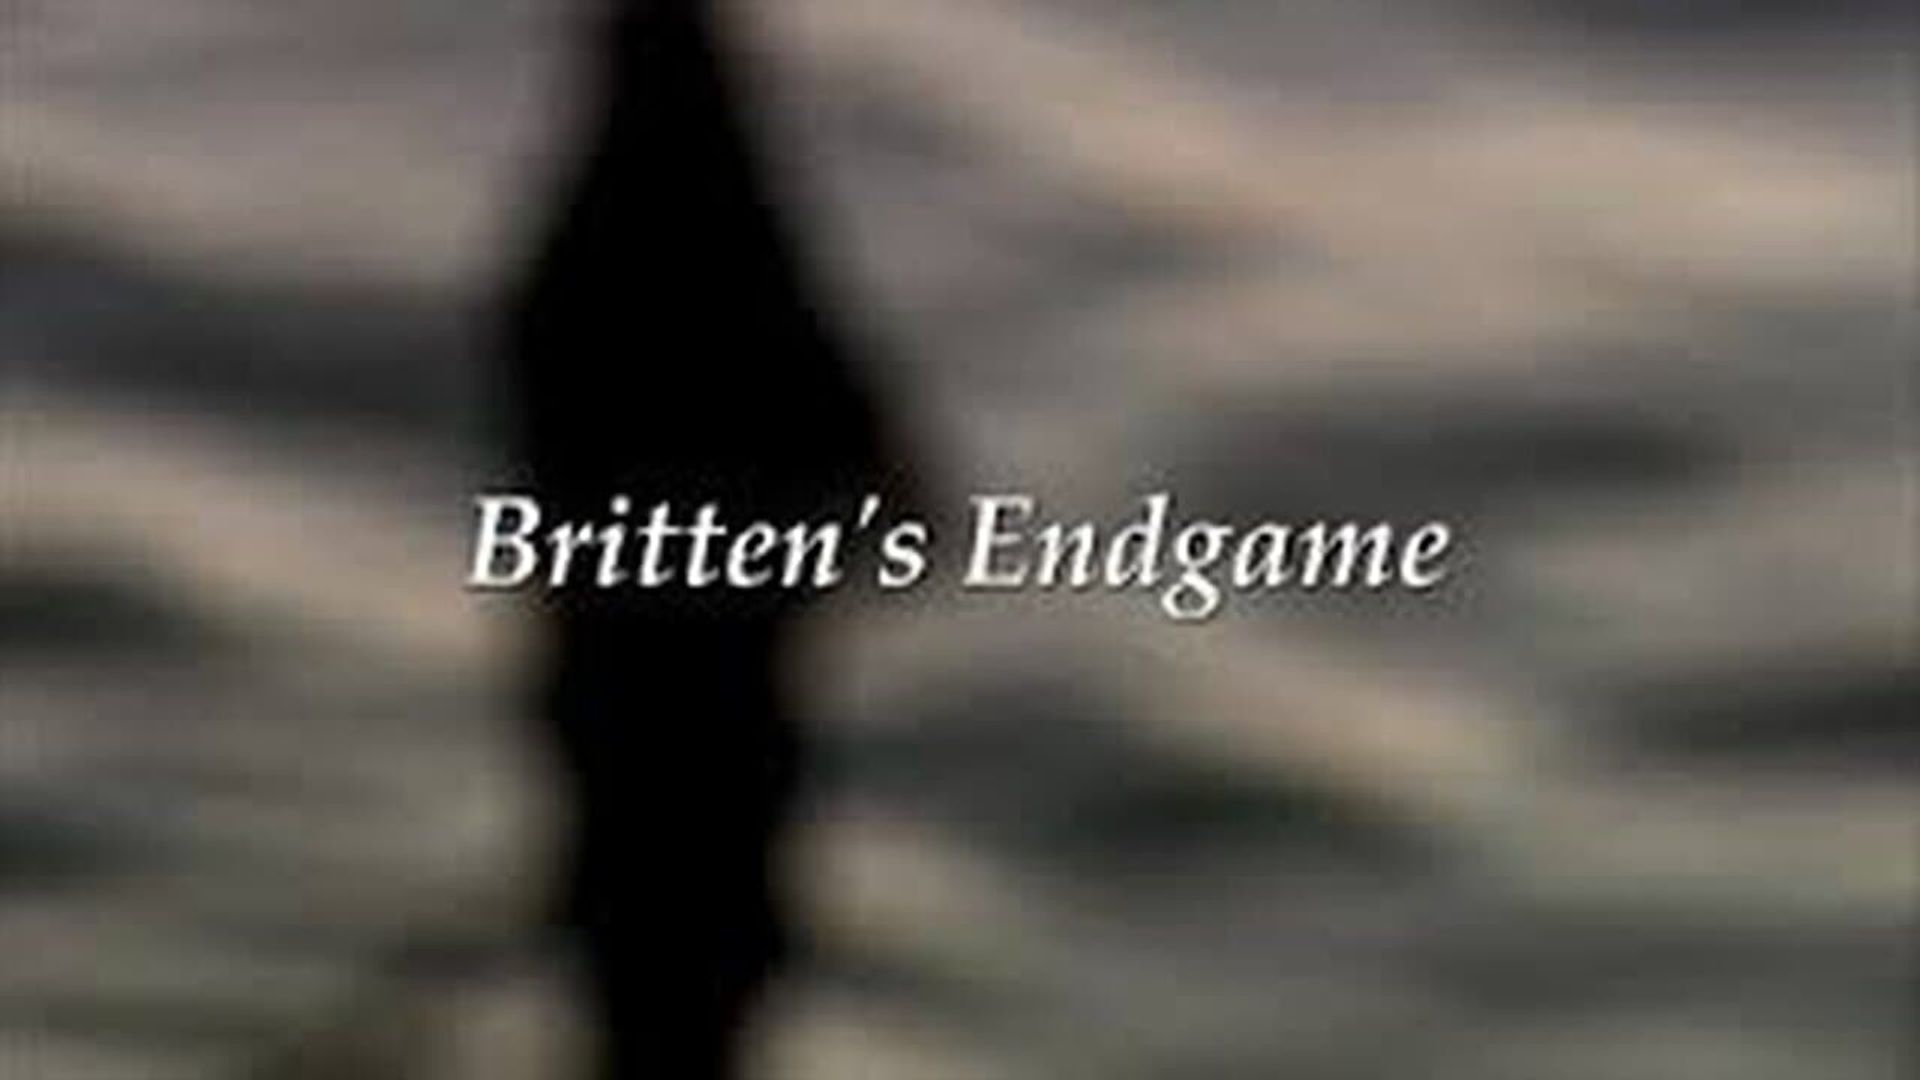 Britten's Endgame background